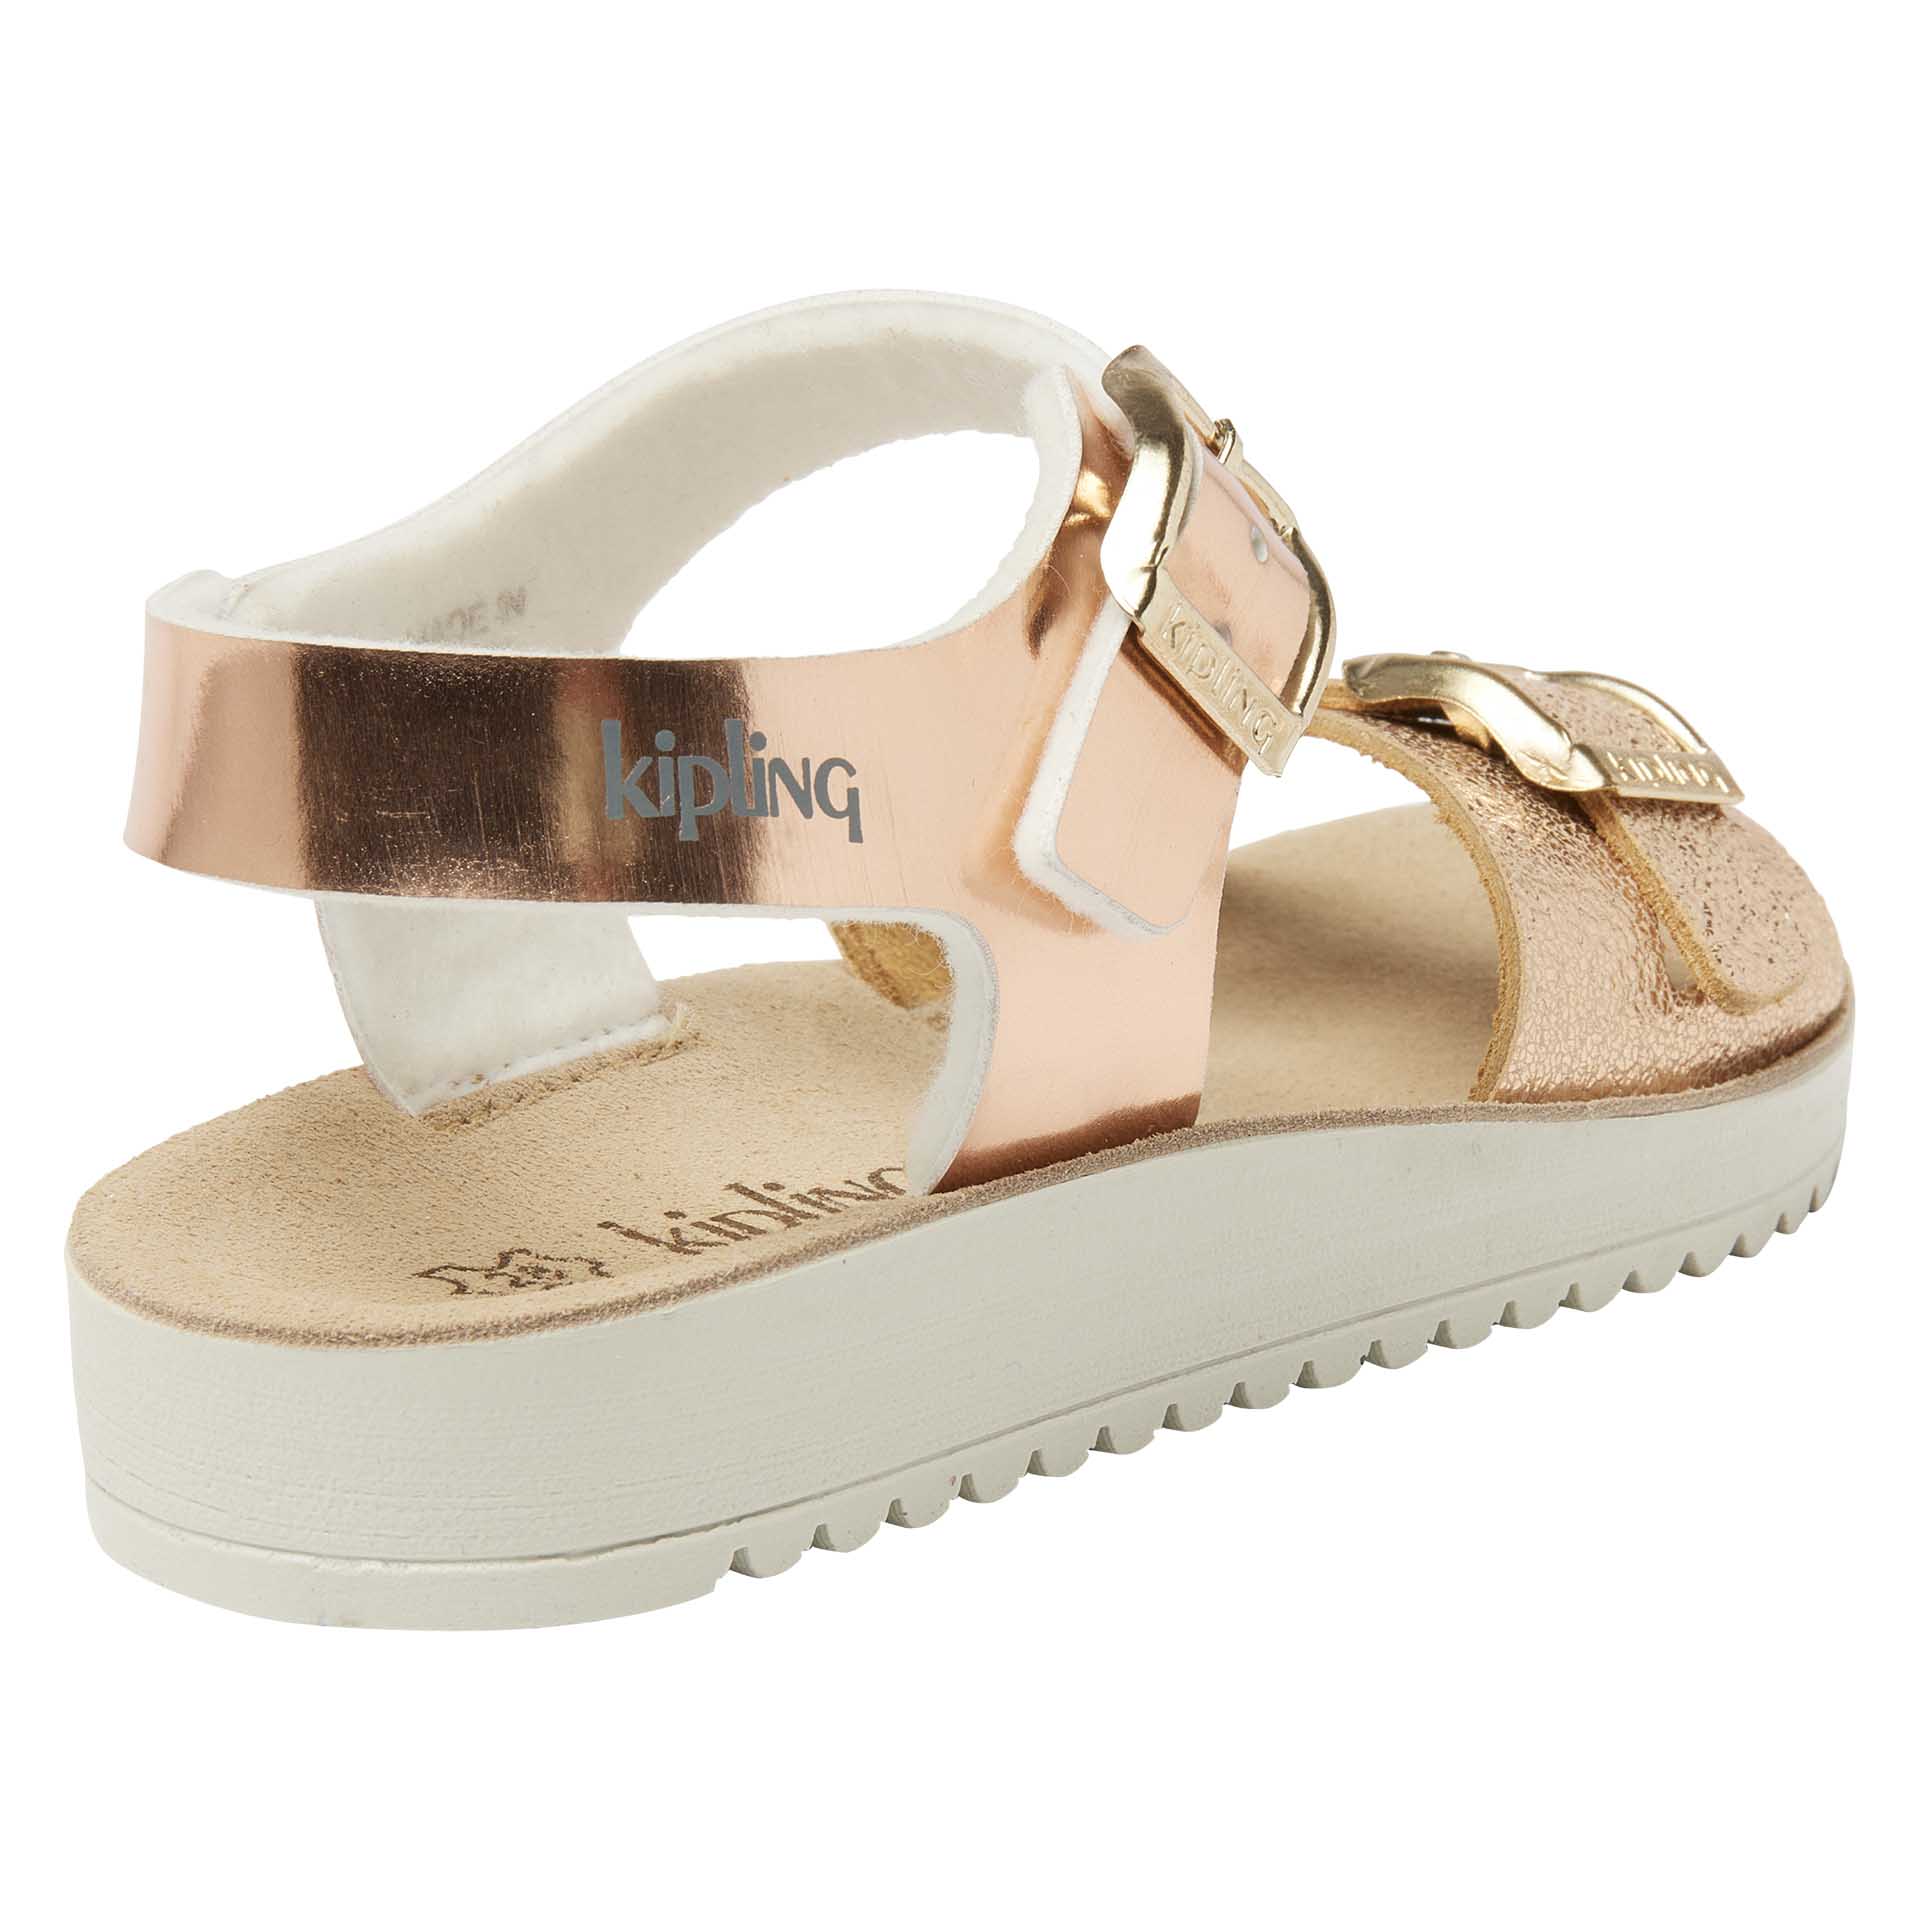 Roze metallic sandaal voor meisjes met dubbele gesp en een flexibele witte zool, Kipling